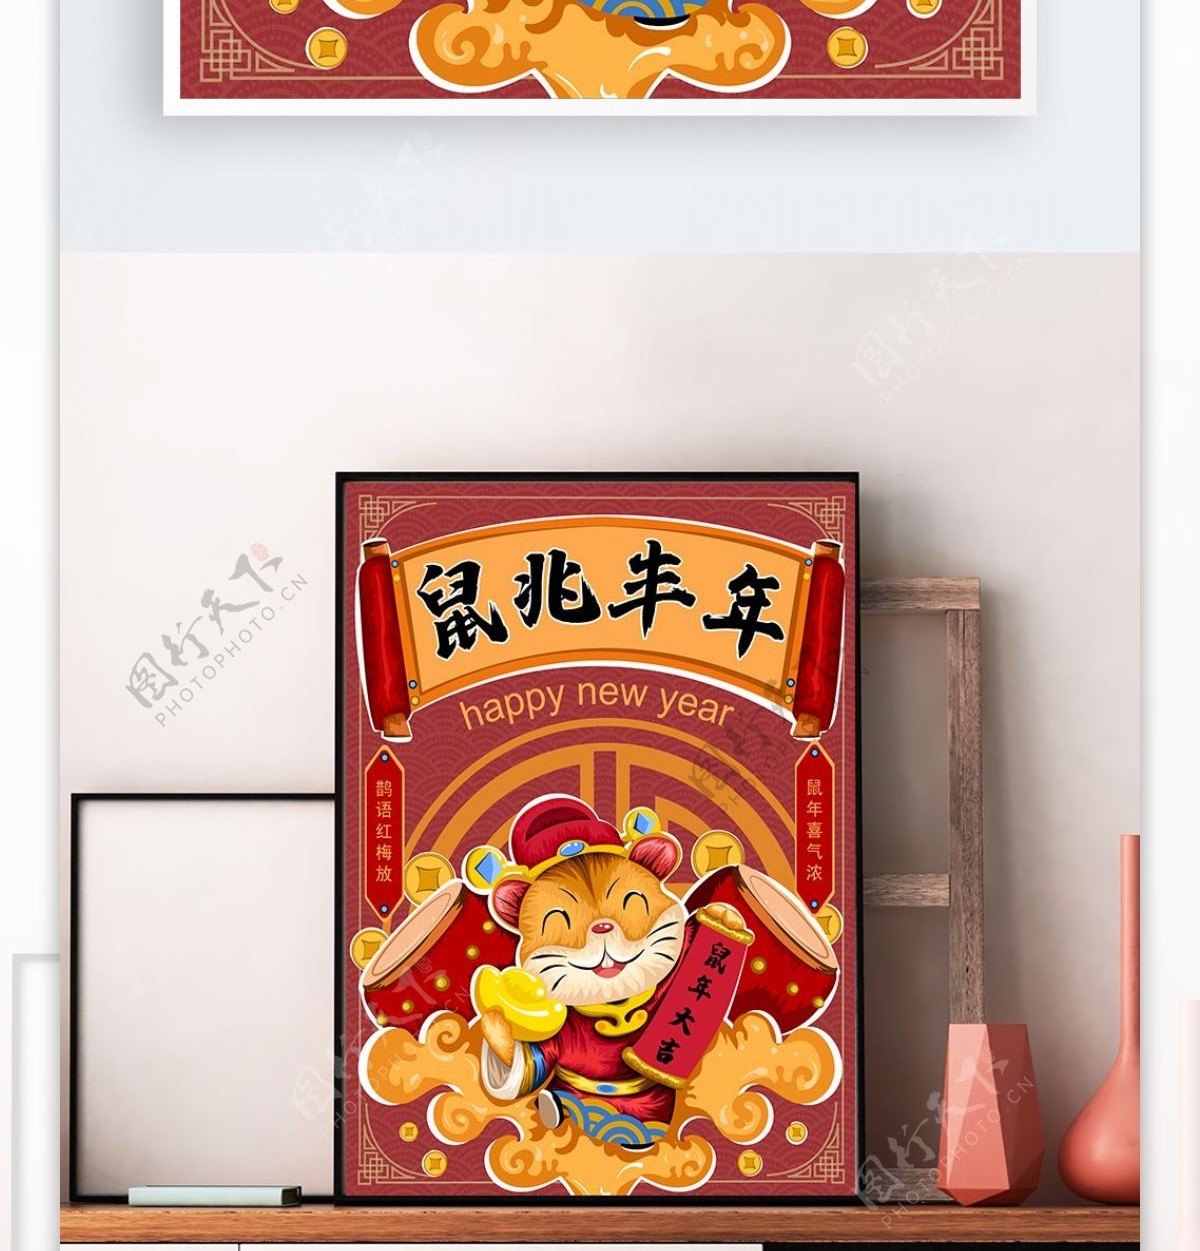 原创手绘中国风鼠年贺岁海报